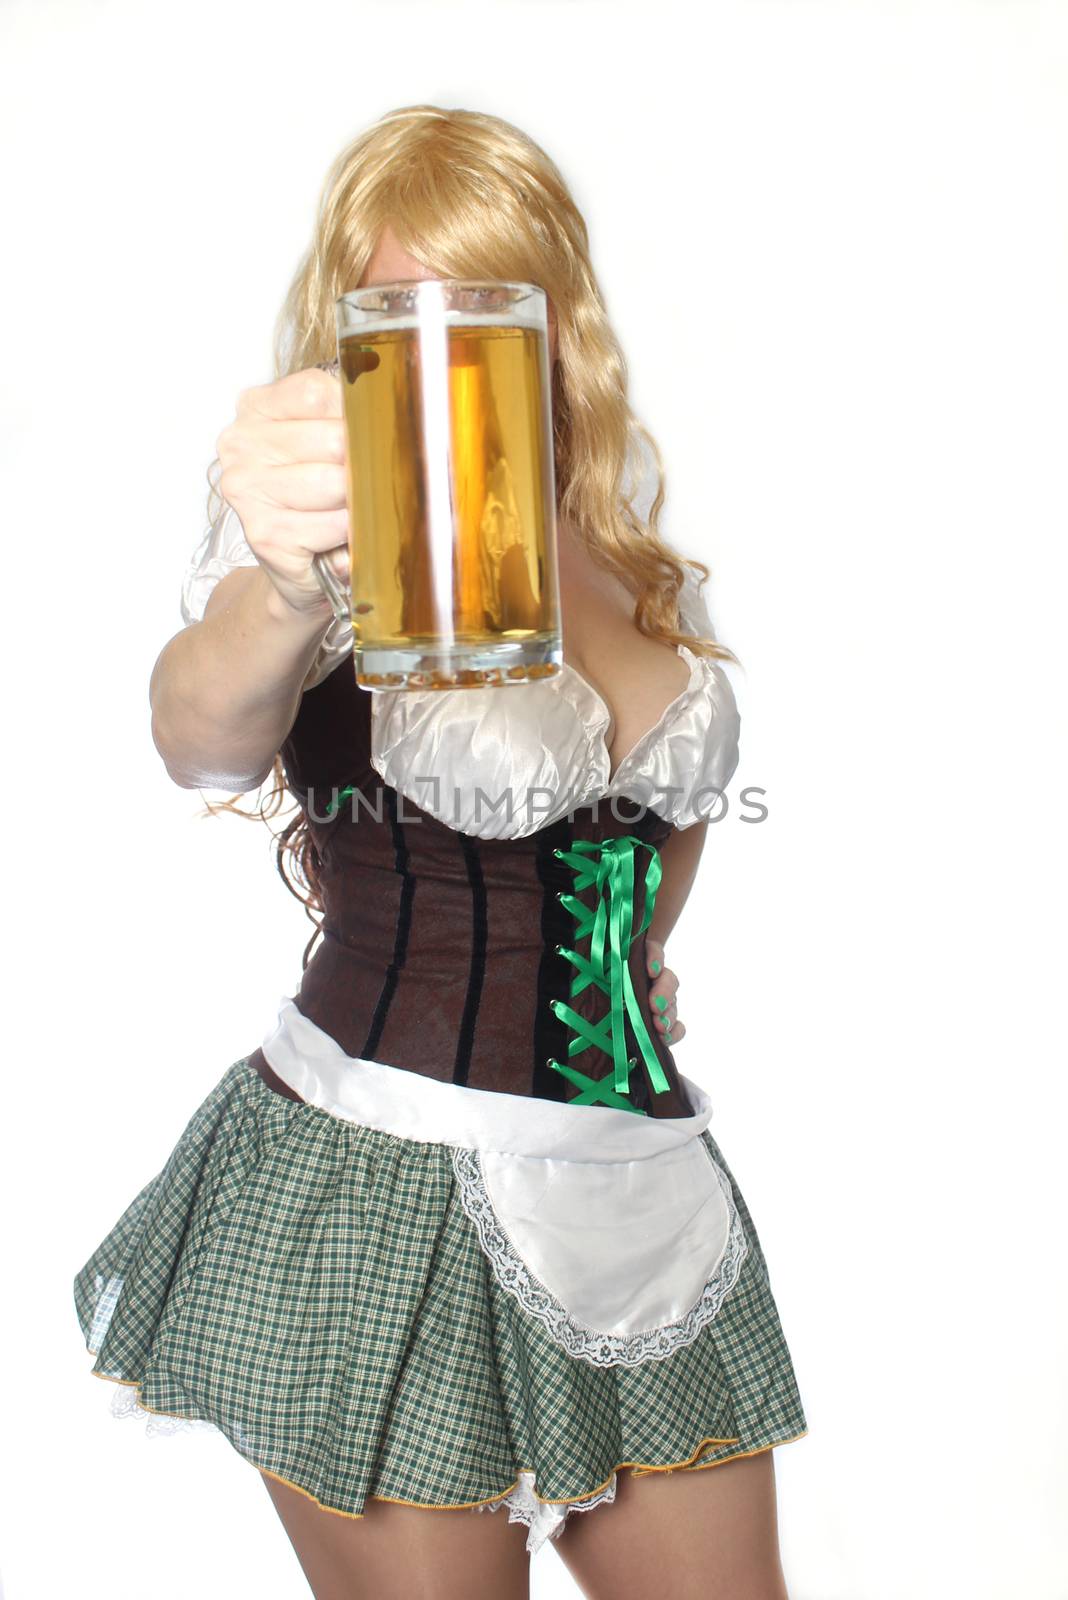 Tavern Waitress With Beer Mug by Marti157900